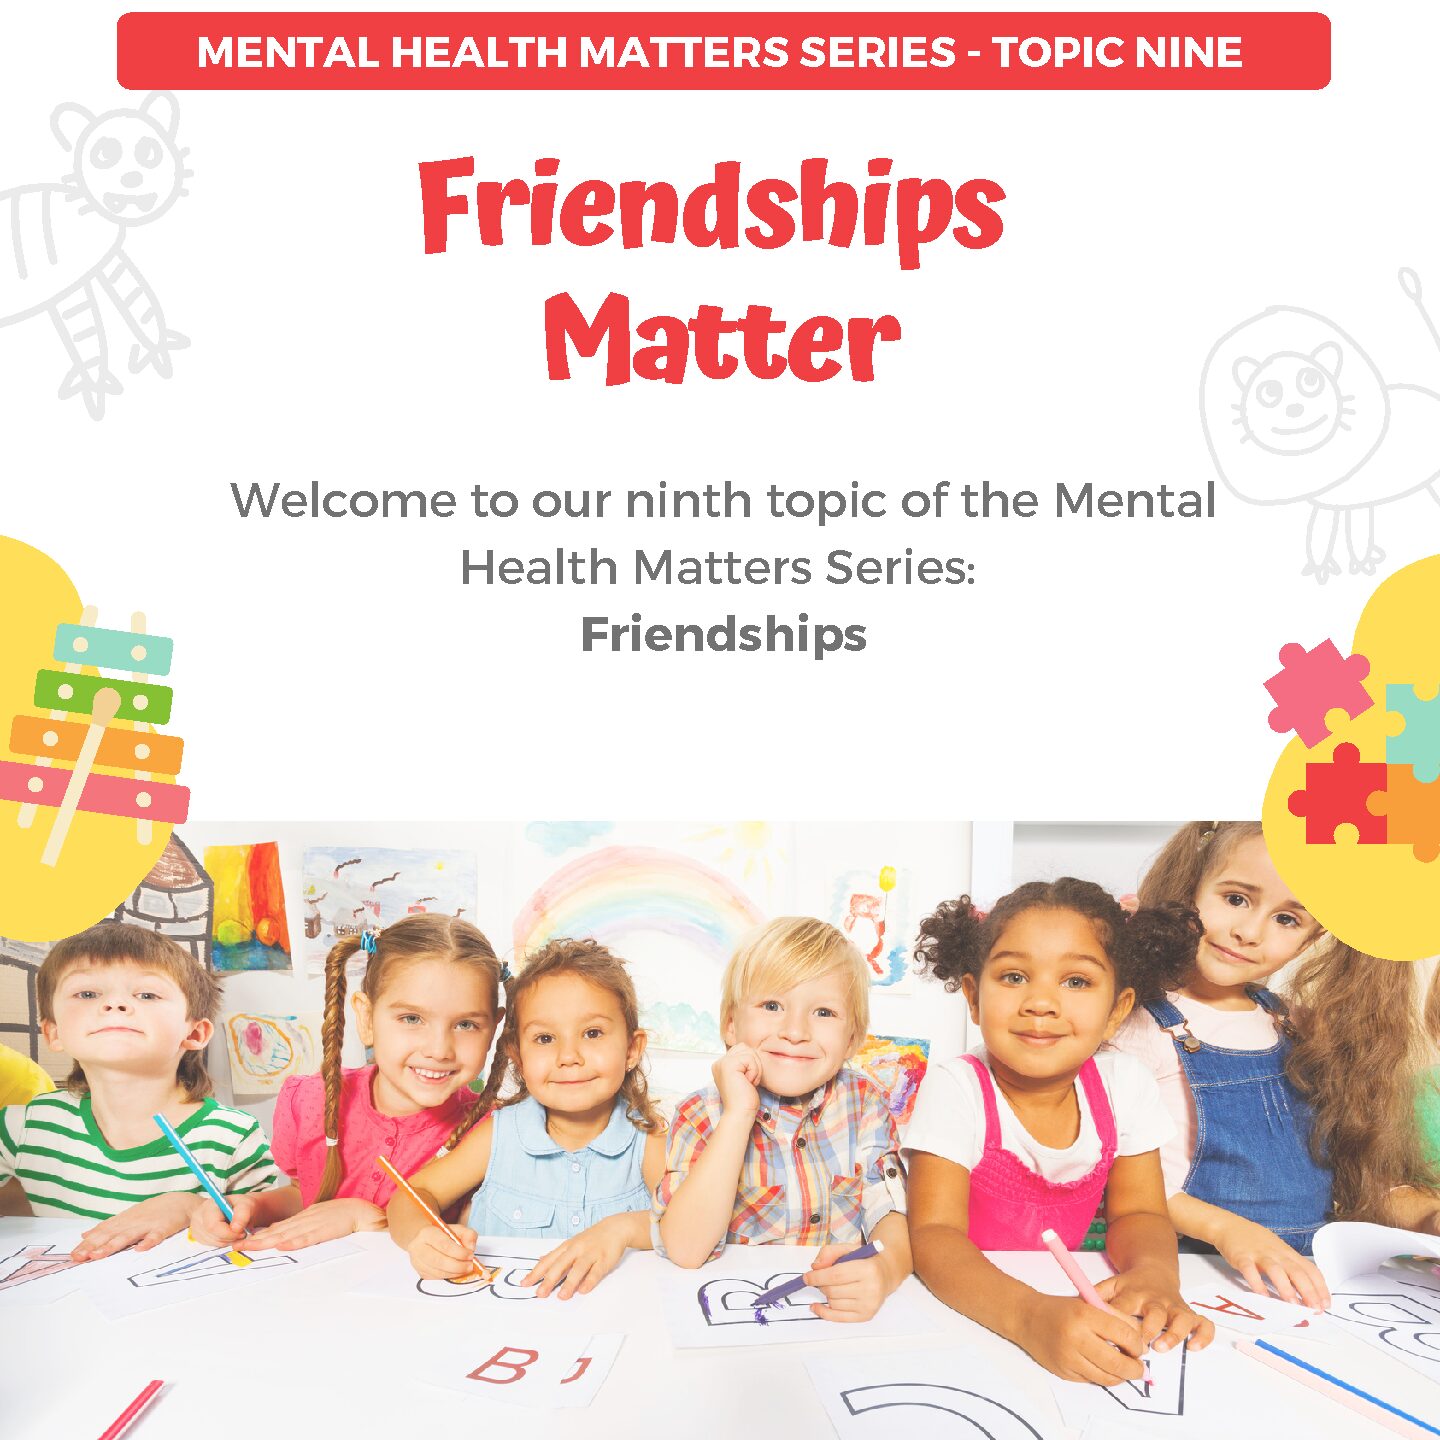 Mental Health Matters Series: Friendships Matter